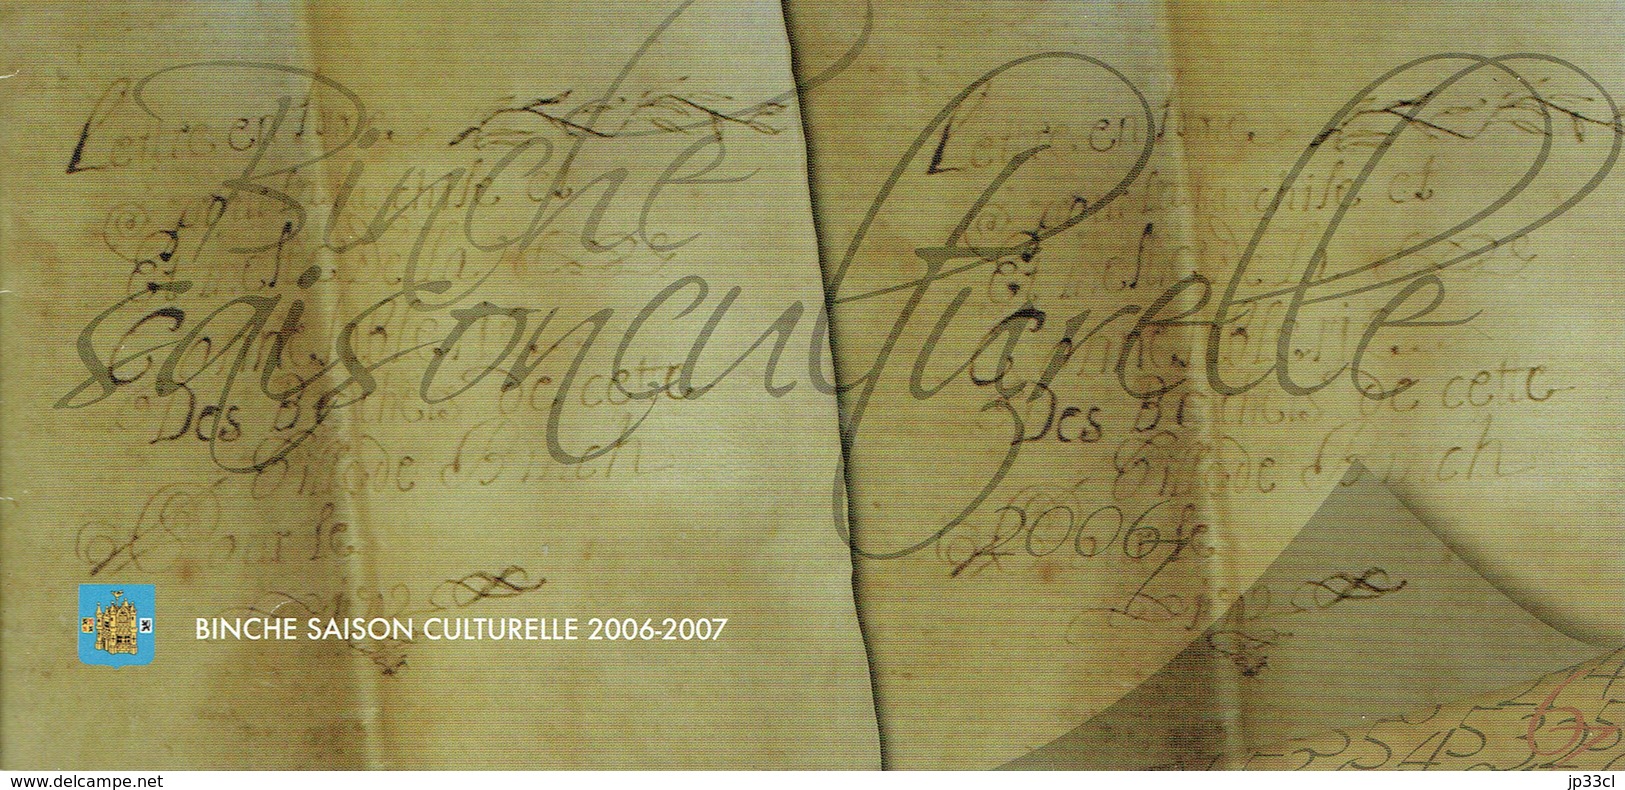 Programme De La Saison Culturelle De Binche, Année 2006/2007 (20 Pages) - Programme